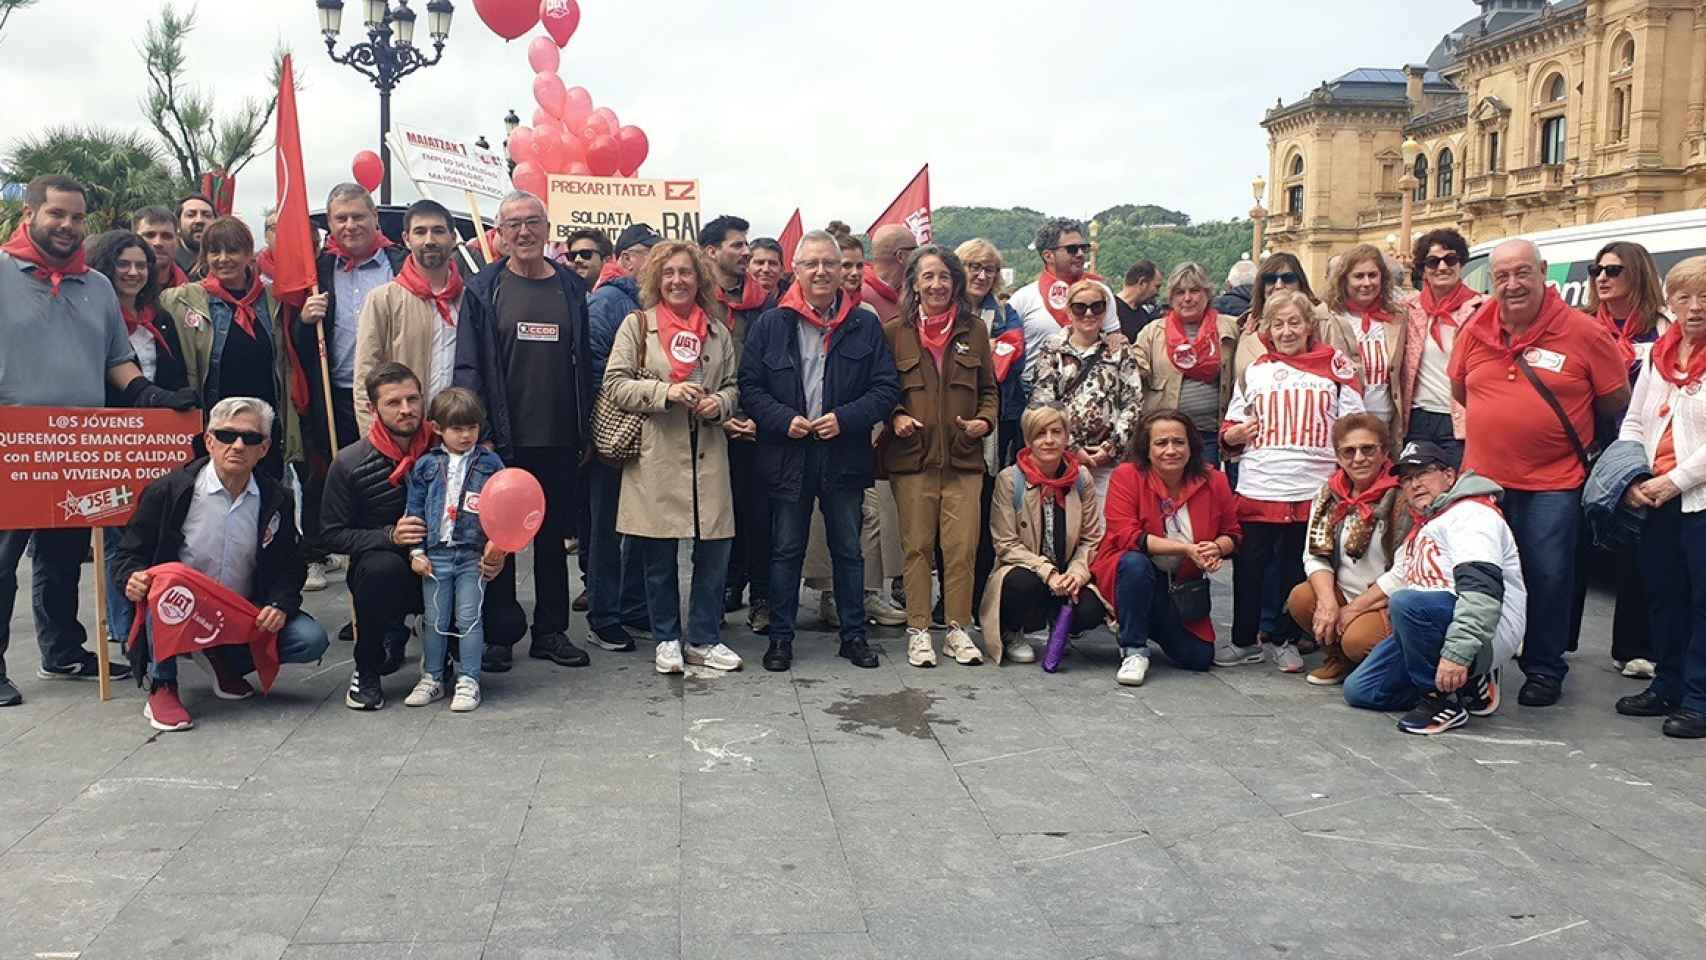 El secretario general de los socialistas guipuzcoanos, José Ignacio Asensio, y representantes del PSE de Gipuzkoa en la manifestación del 1 de mayo en San Sebastián / PSE Guipuzkoa